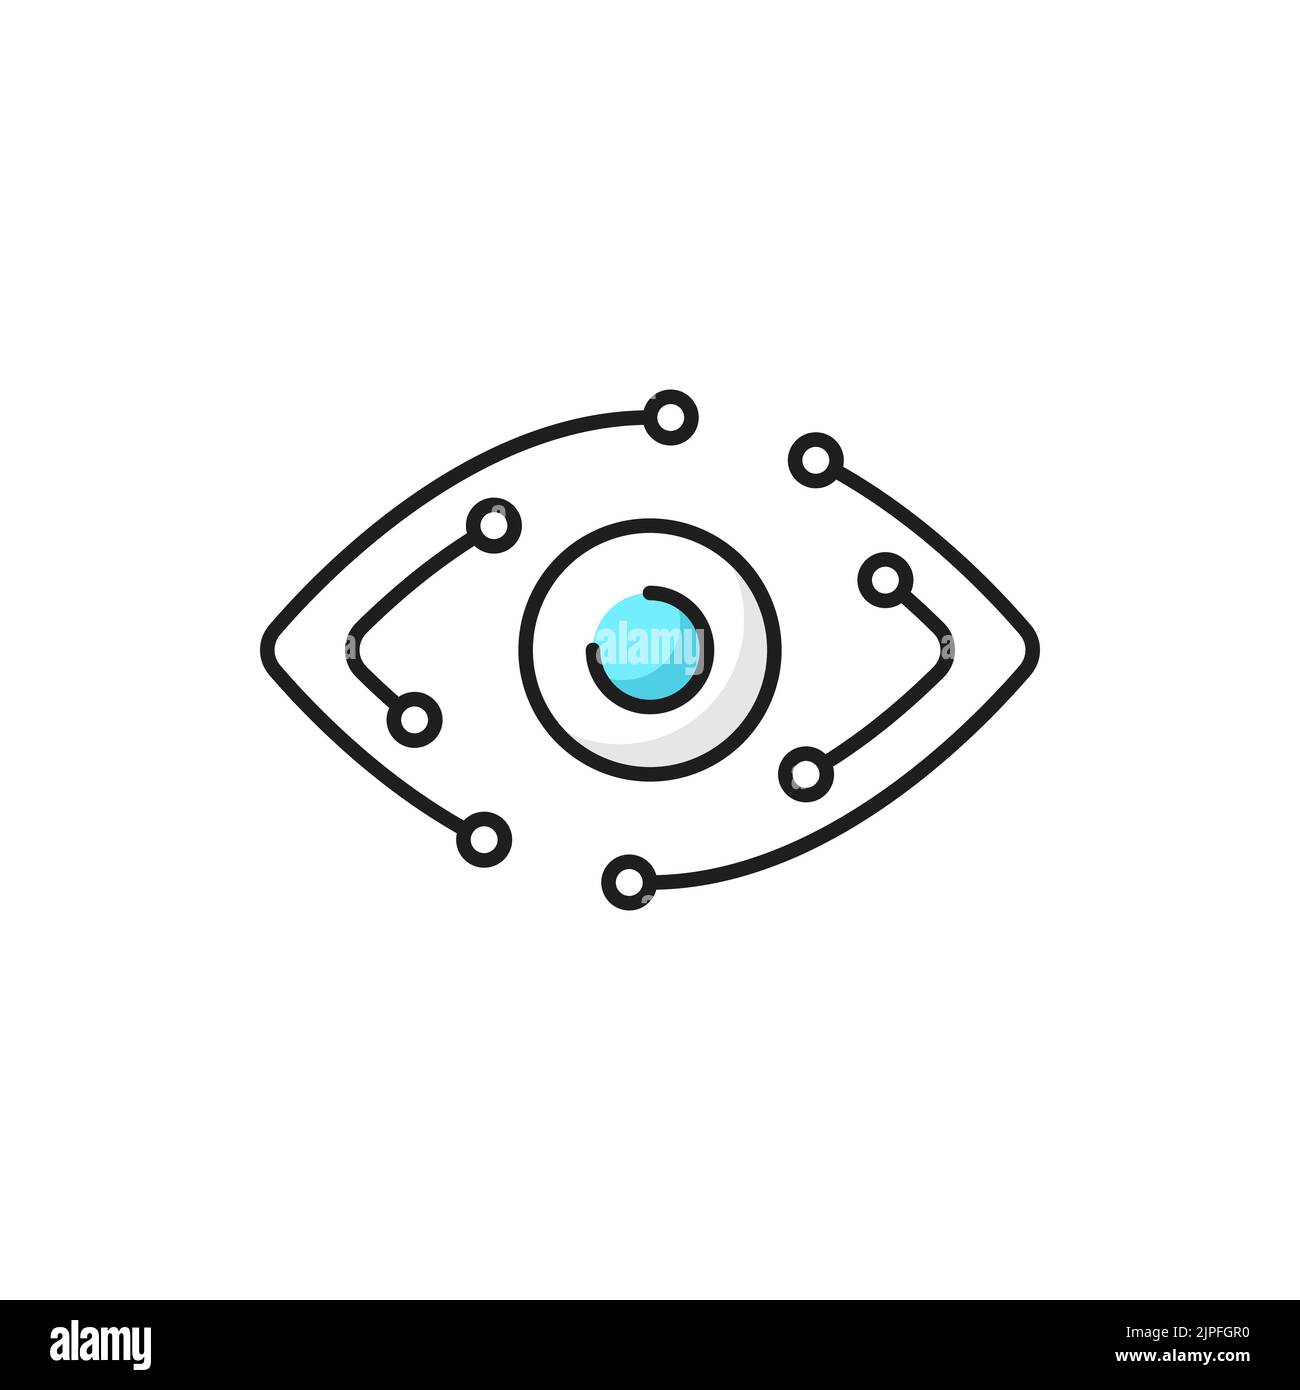 Moderne Tech-Innovation skizzieren Symbol mit Roboter Auge und Computer-Motherboard Tracks. Biometrische Scanner-Technologie, künstliche Intelligenz und Computer Vision dünne Linie Vektor-Zeichen mit Cyborg Augapfel Stock Vektor